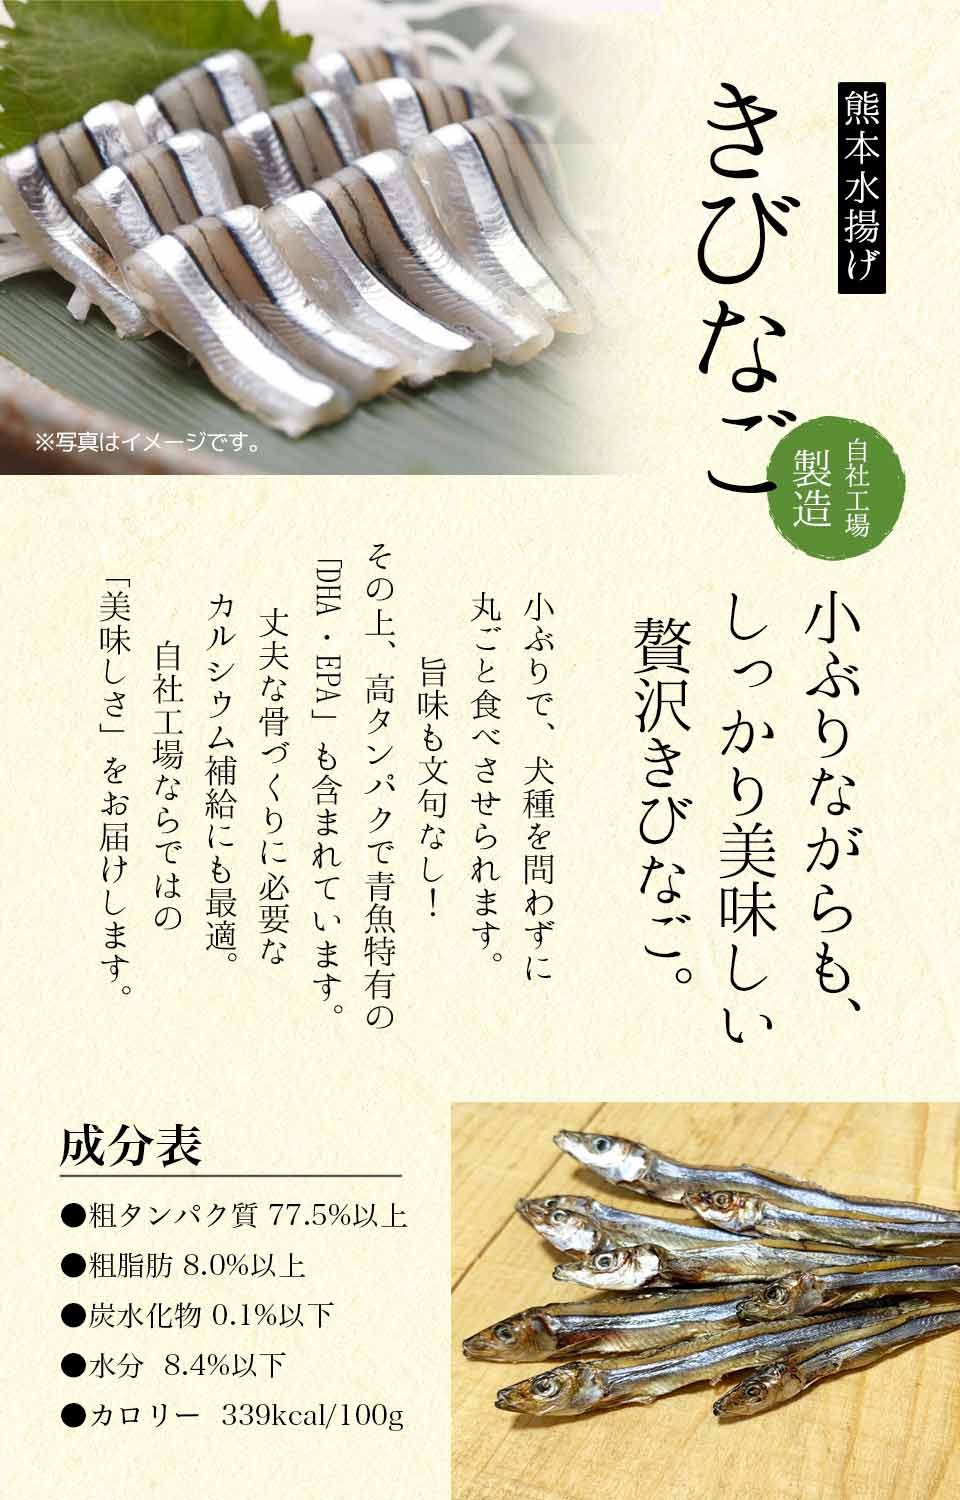 Japanese Kibinago Herring Fish 50g